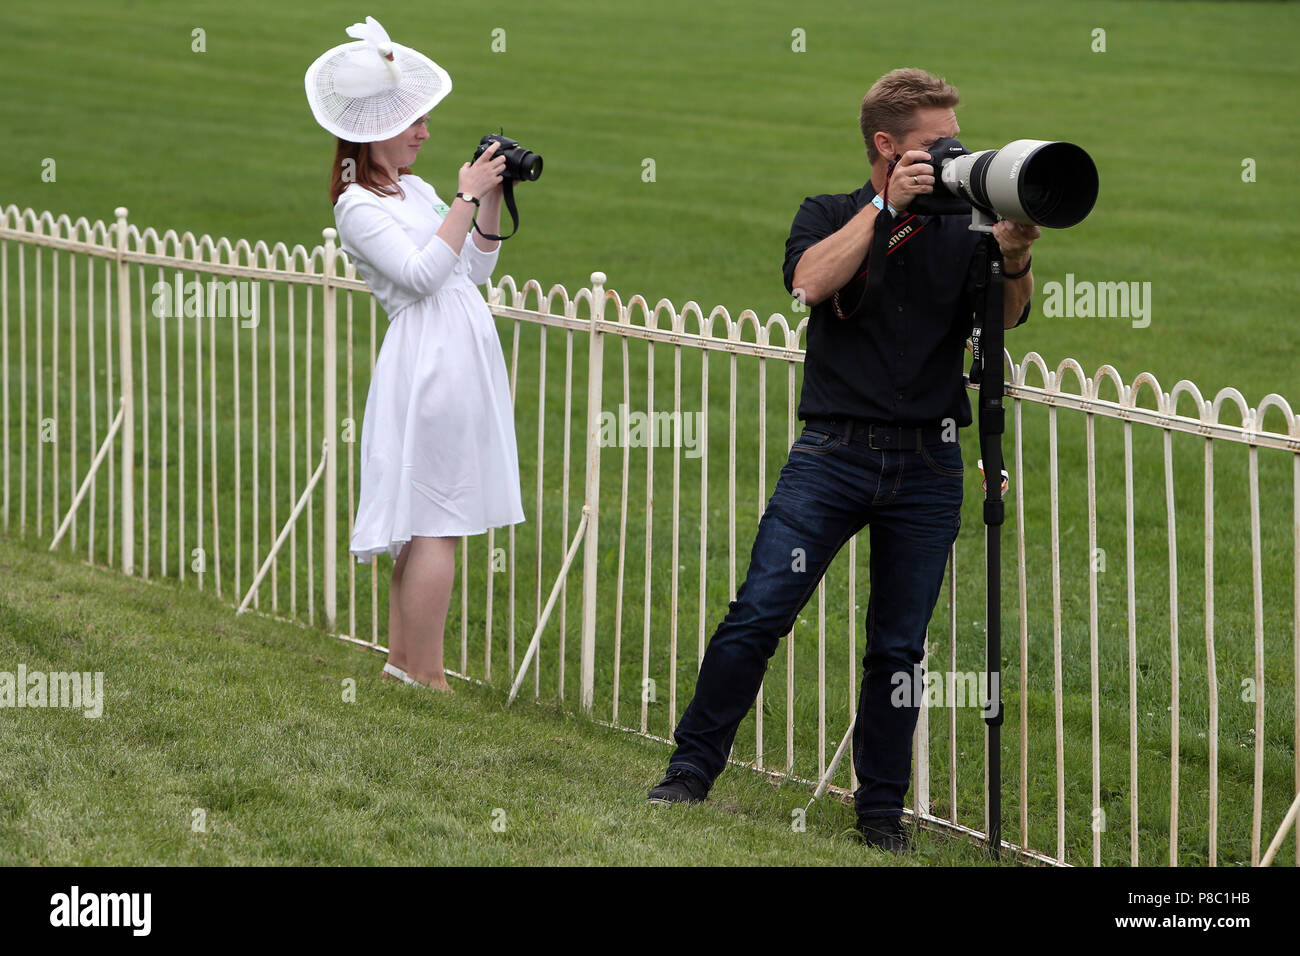 Hoppegarten, elegantemente vestido mujer con sombrero y fotógrafo de prensa tomando fotografías Foto de stock